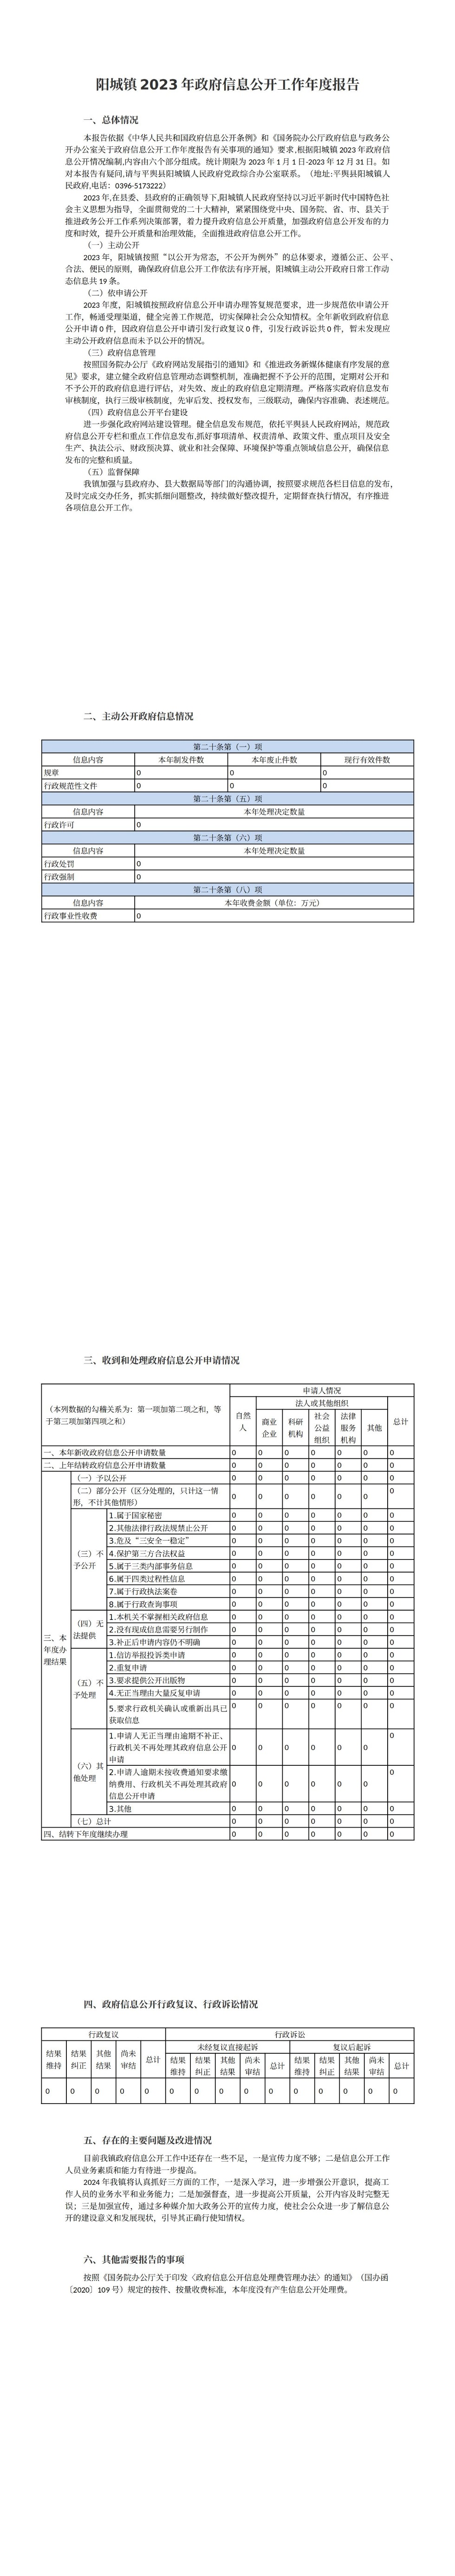 阳城镇2023年政府信息公开工作年度报告_00.jpg